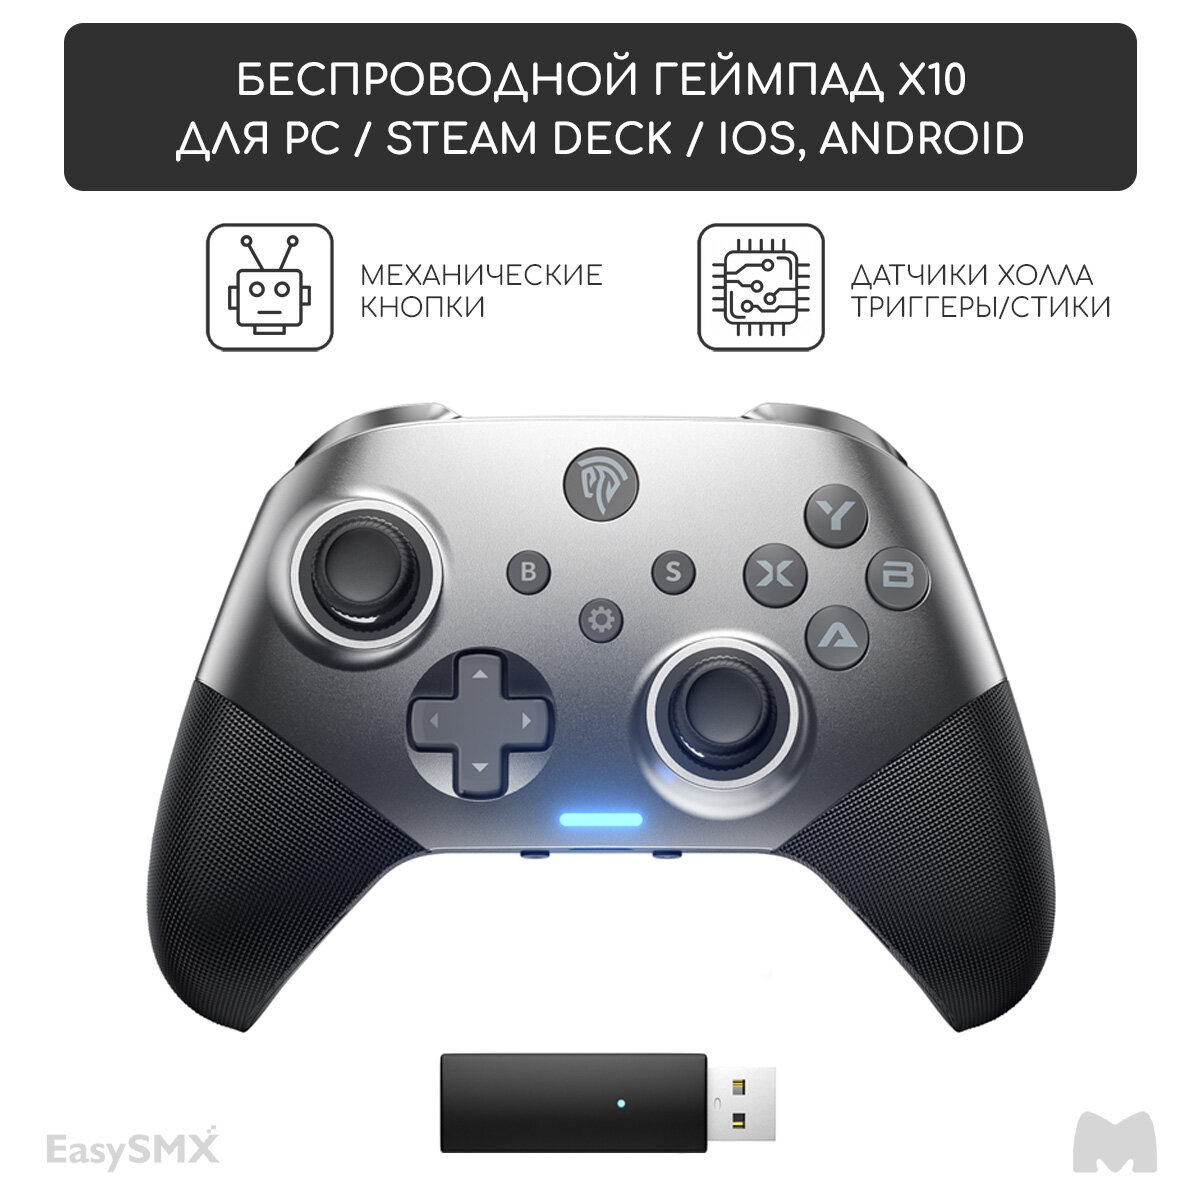 Беспроводной геймпад EasySMX X10 с механическими кнопками / для ПК, Steam Deck, Смартфонов iOS + Android / датчики Холла на триггерах/стиках / цвет серый (VG-C426)